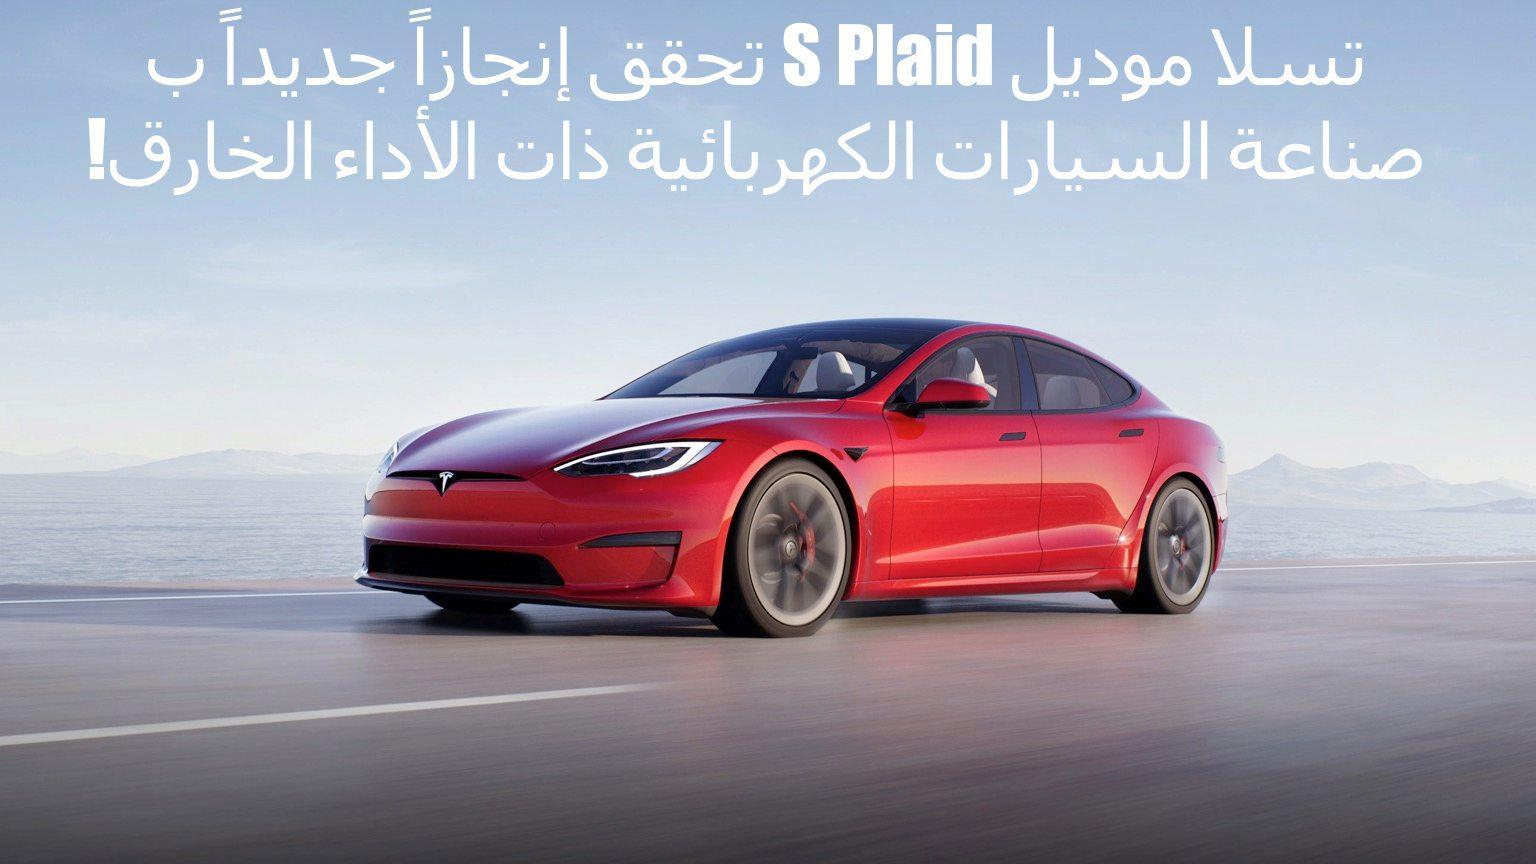 تسلا موديل S Plaid تحقق إنجازاً جديداً بصناعة السيارات الكهربائية ذات الأداء الخارق!